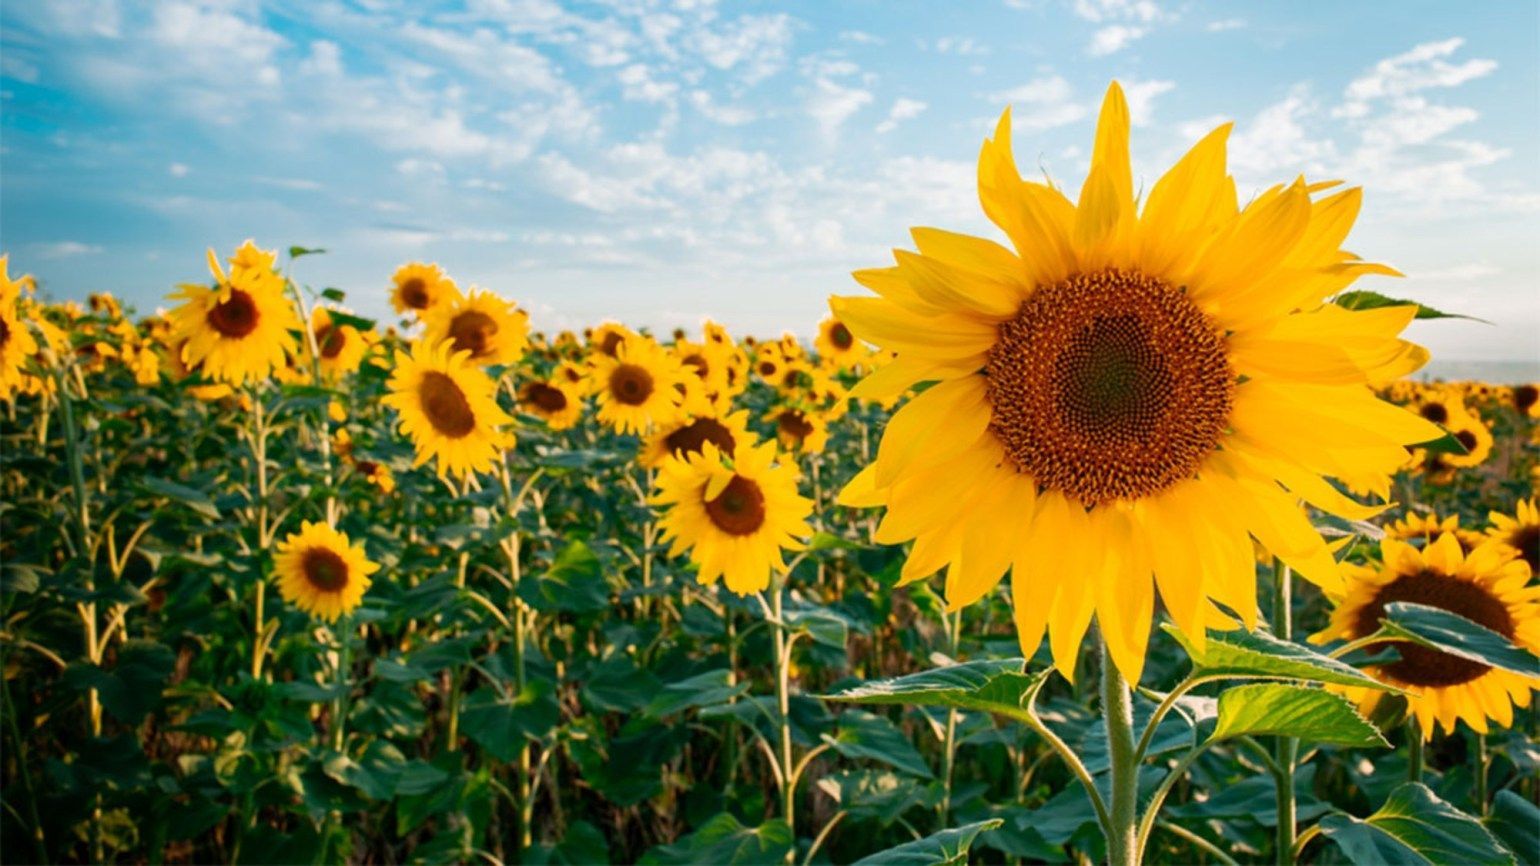 Forța Fermierilor cere să fie interzis importul de floarea soarelui în Republica Moldova: În caz contrar protestele sunt inevitabile